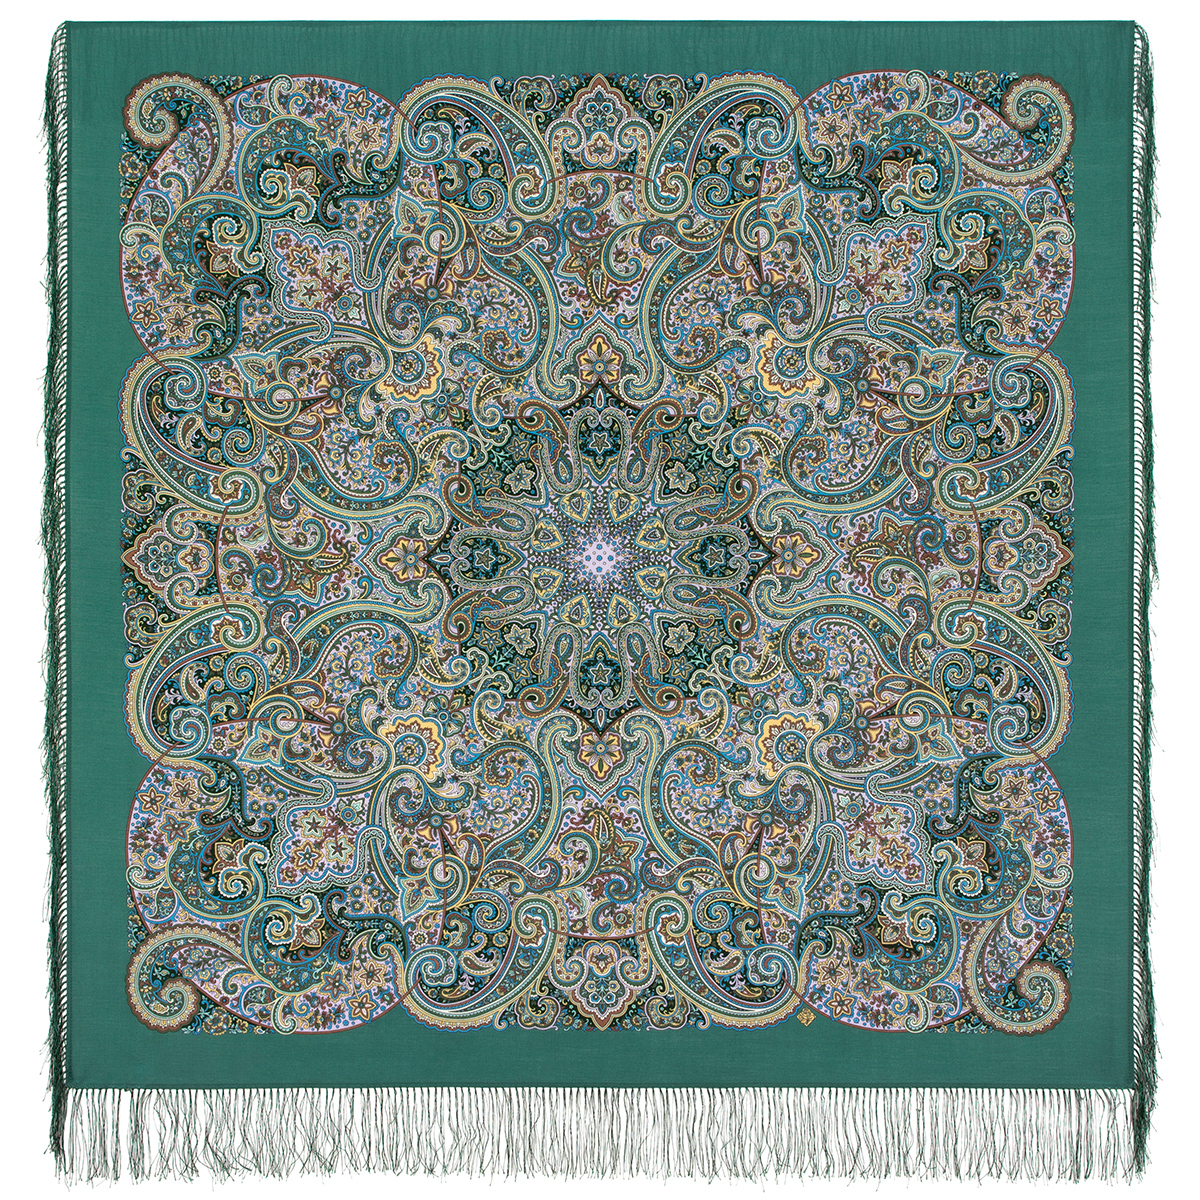 Платок женский Павловопосадский платок 1928 темно-зеленый/болотный/желтый, 125х125 см